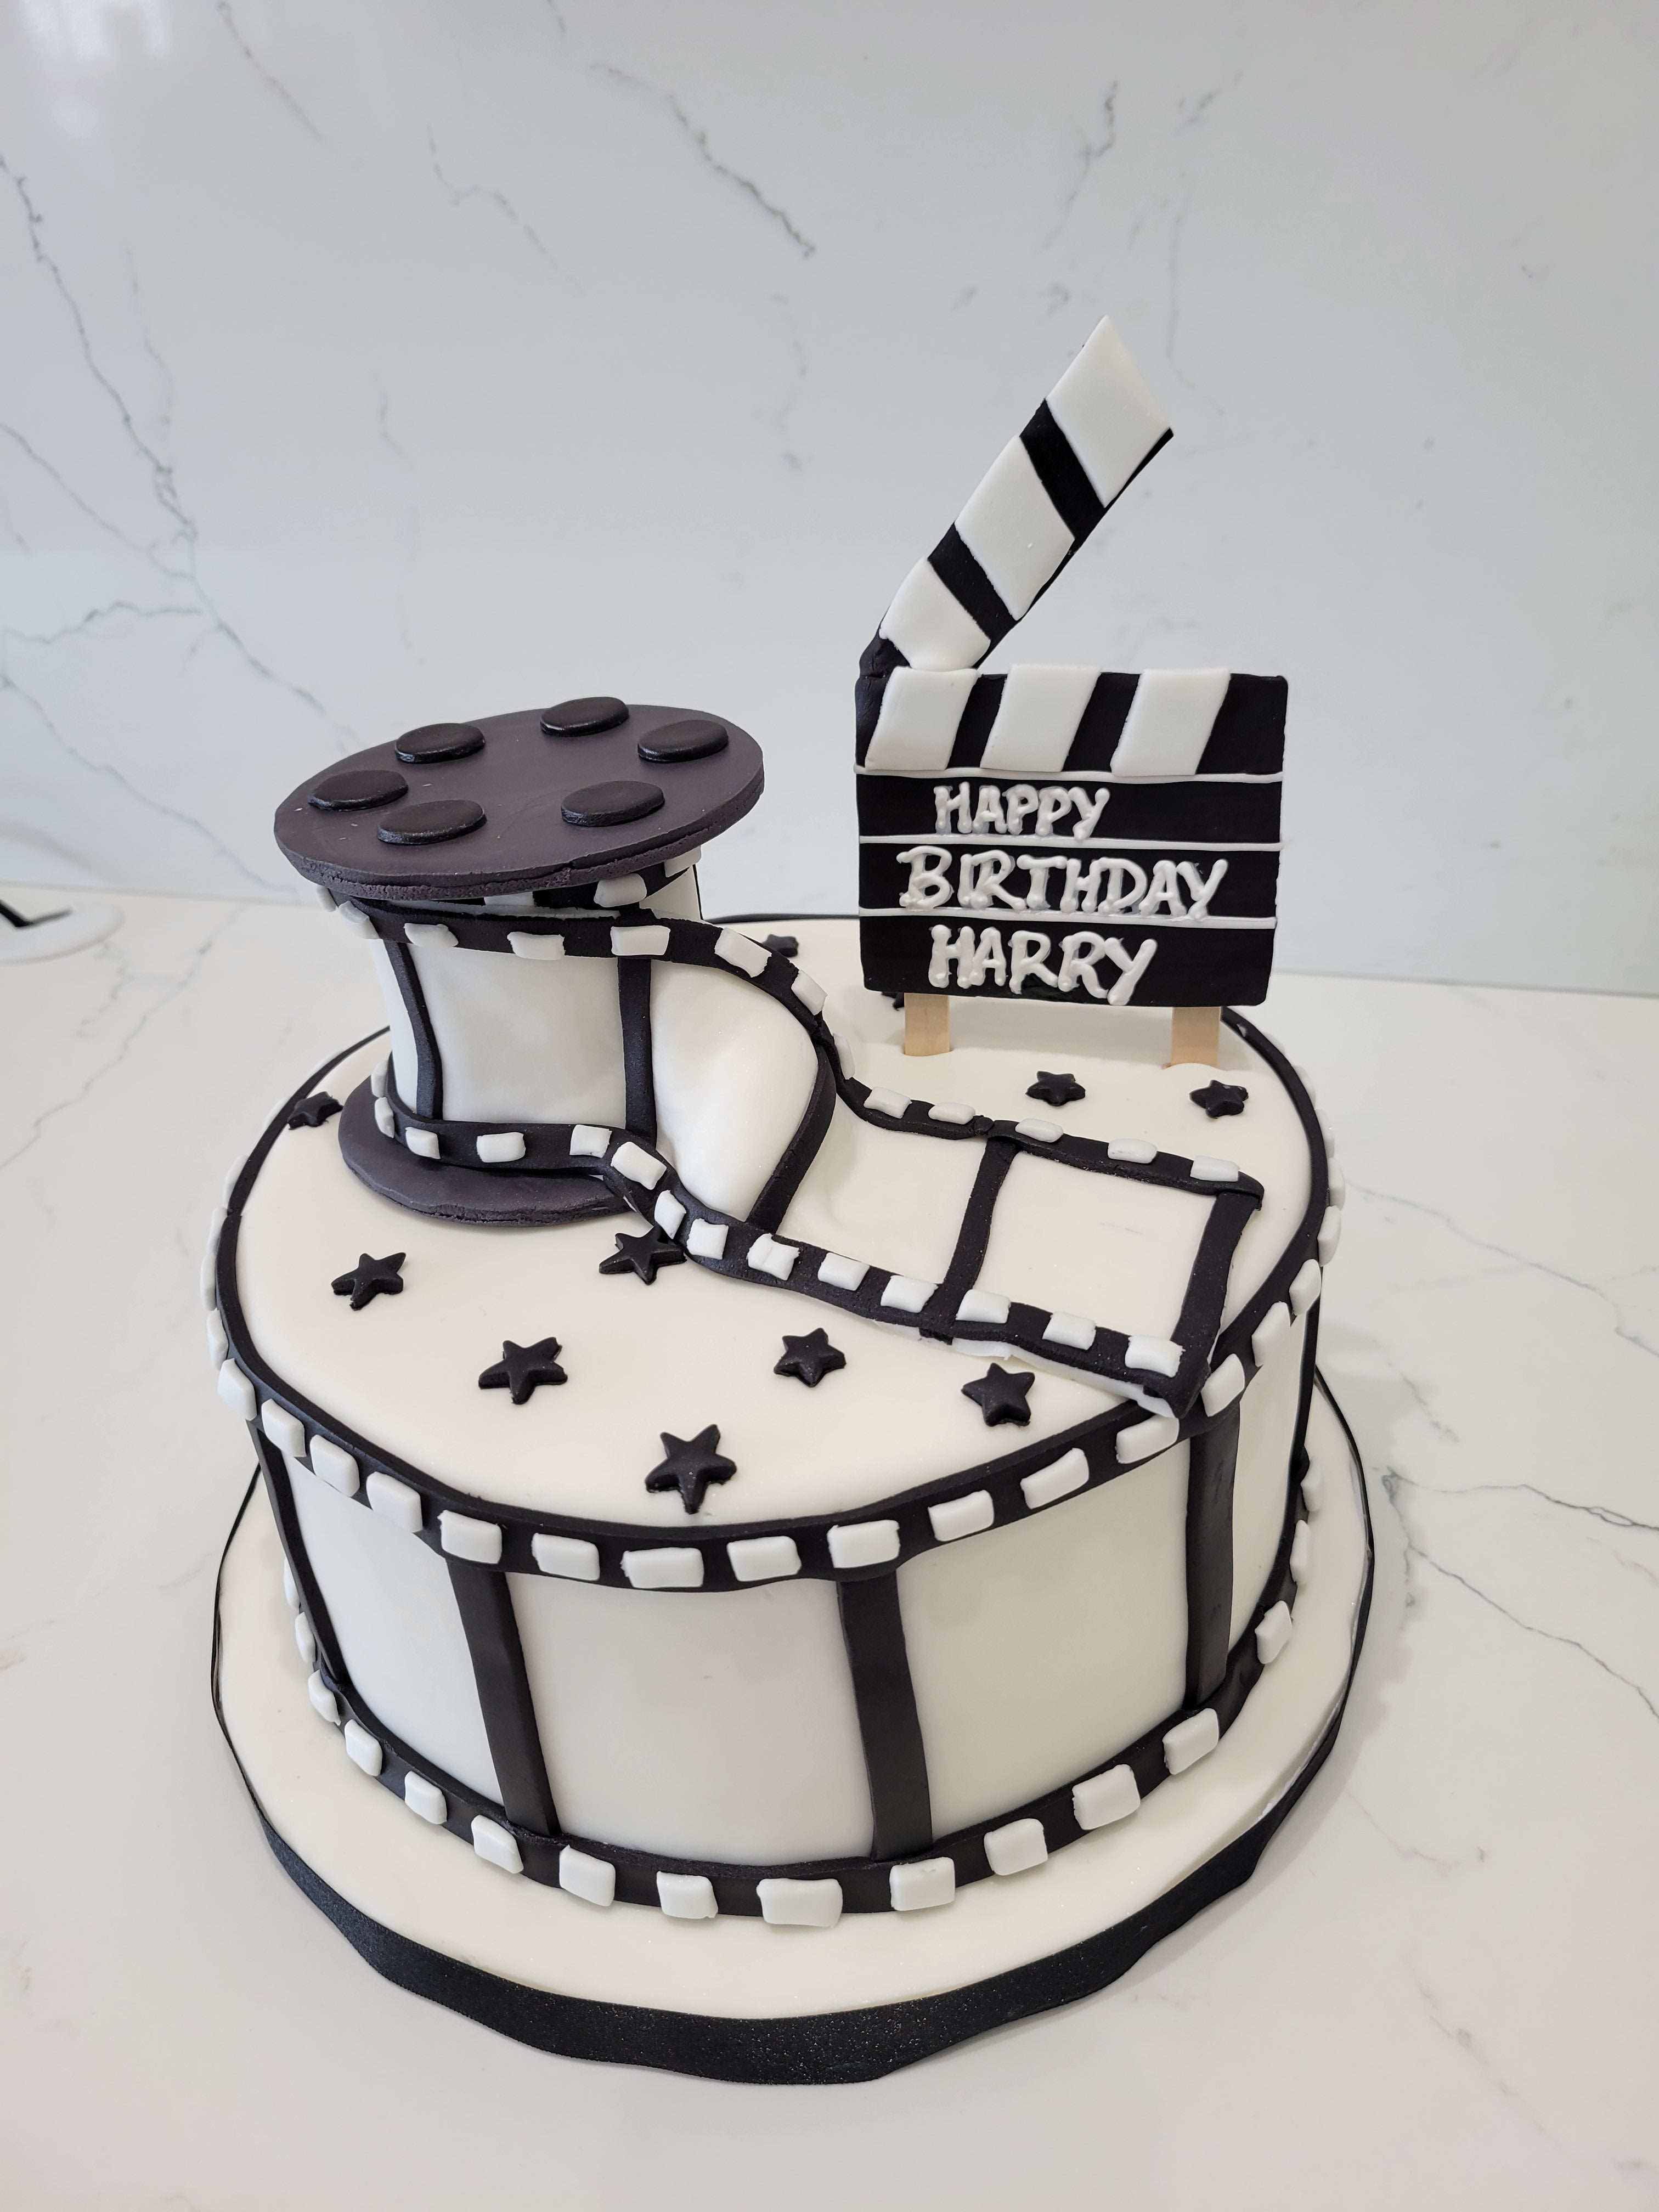 movie reel cake - Sugar Rush Cakes | Sugar Rush Cakes